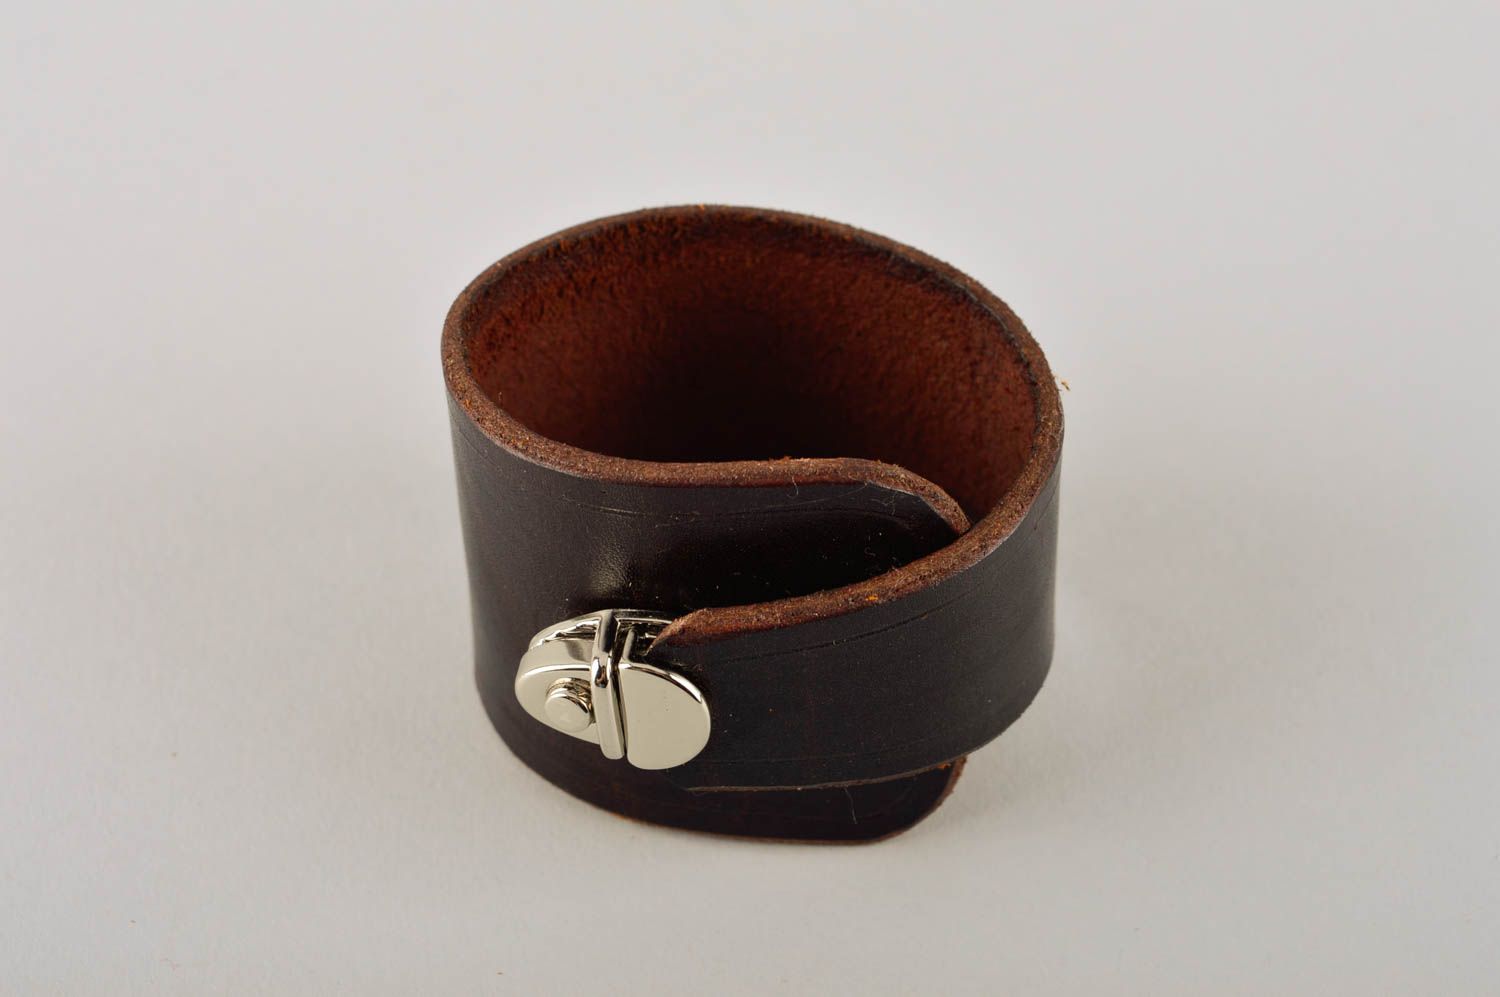 Кожаный браслет ручной работы браслет на руку украшение из кожи и металла фото 2